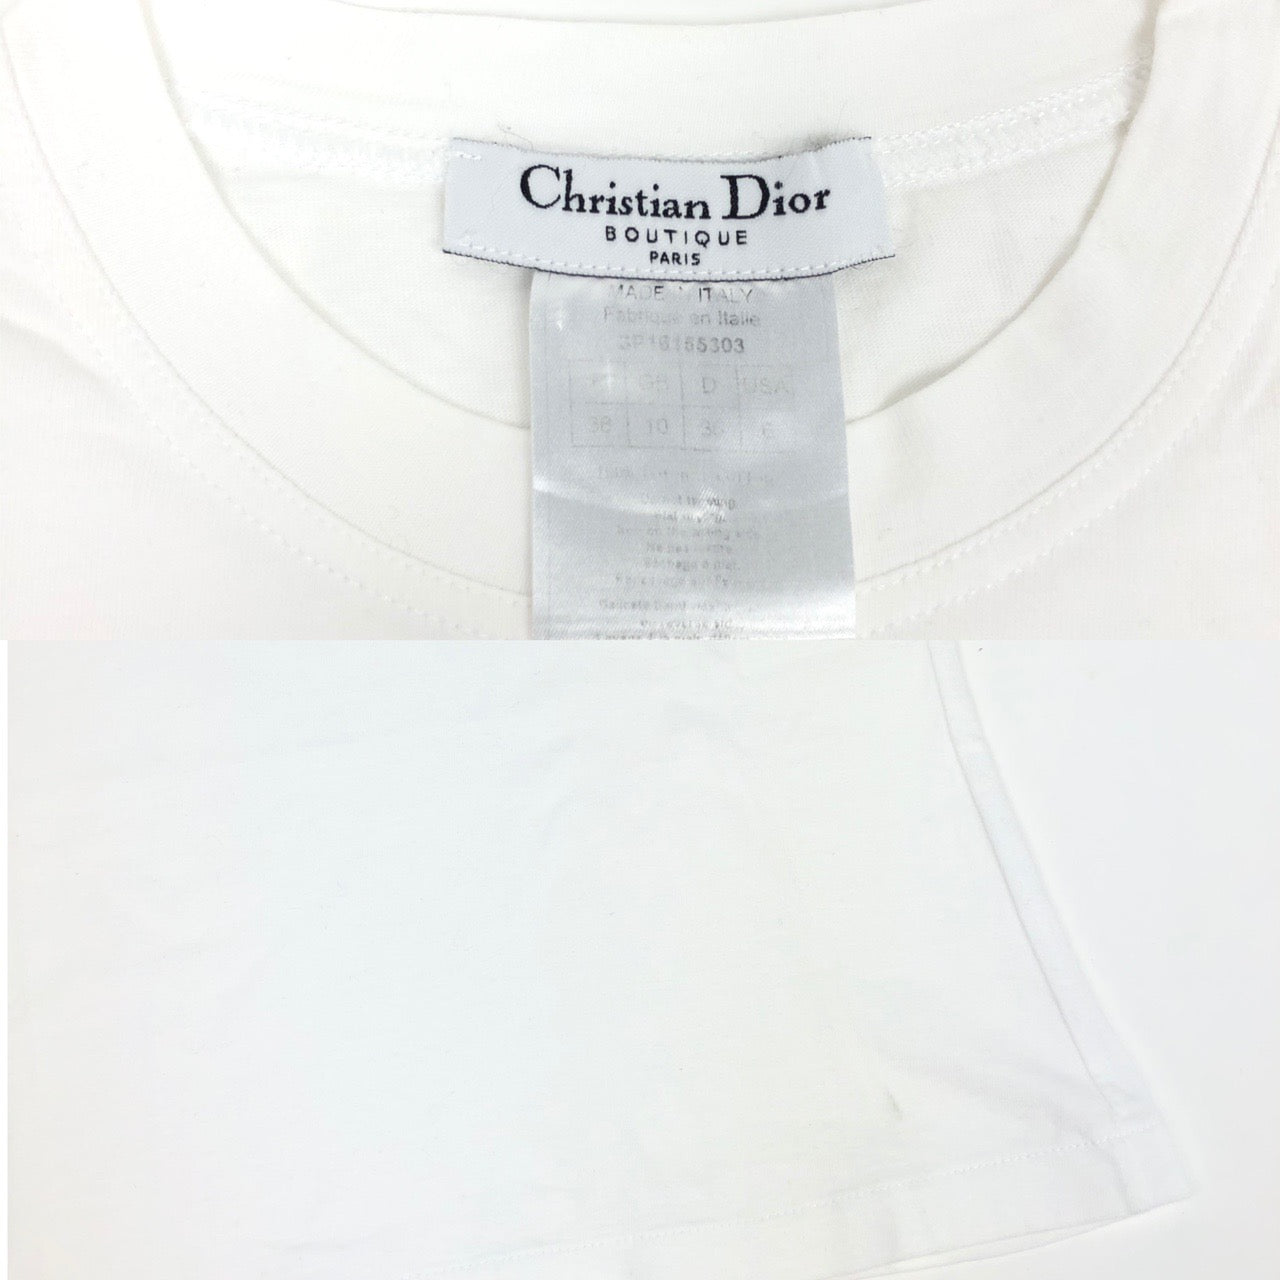 Christian Dior ‘J’adore Dior’ Top